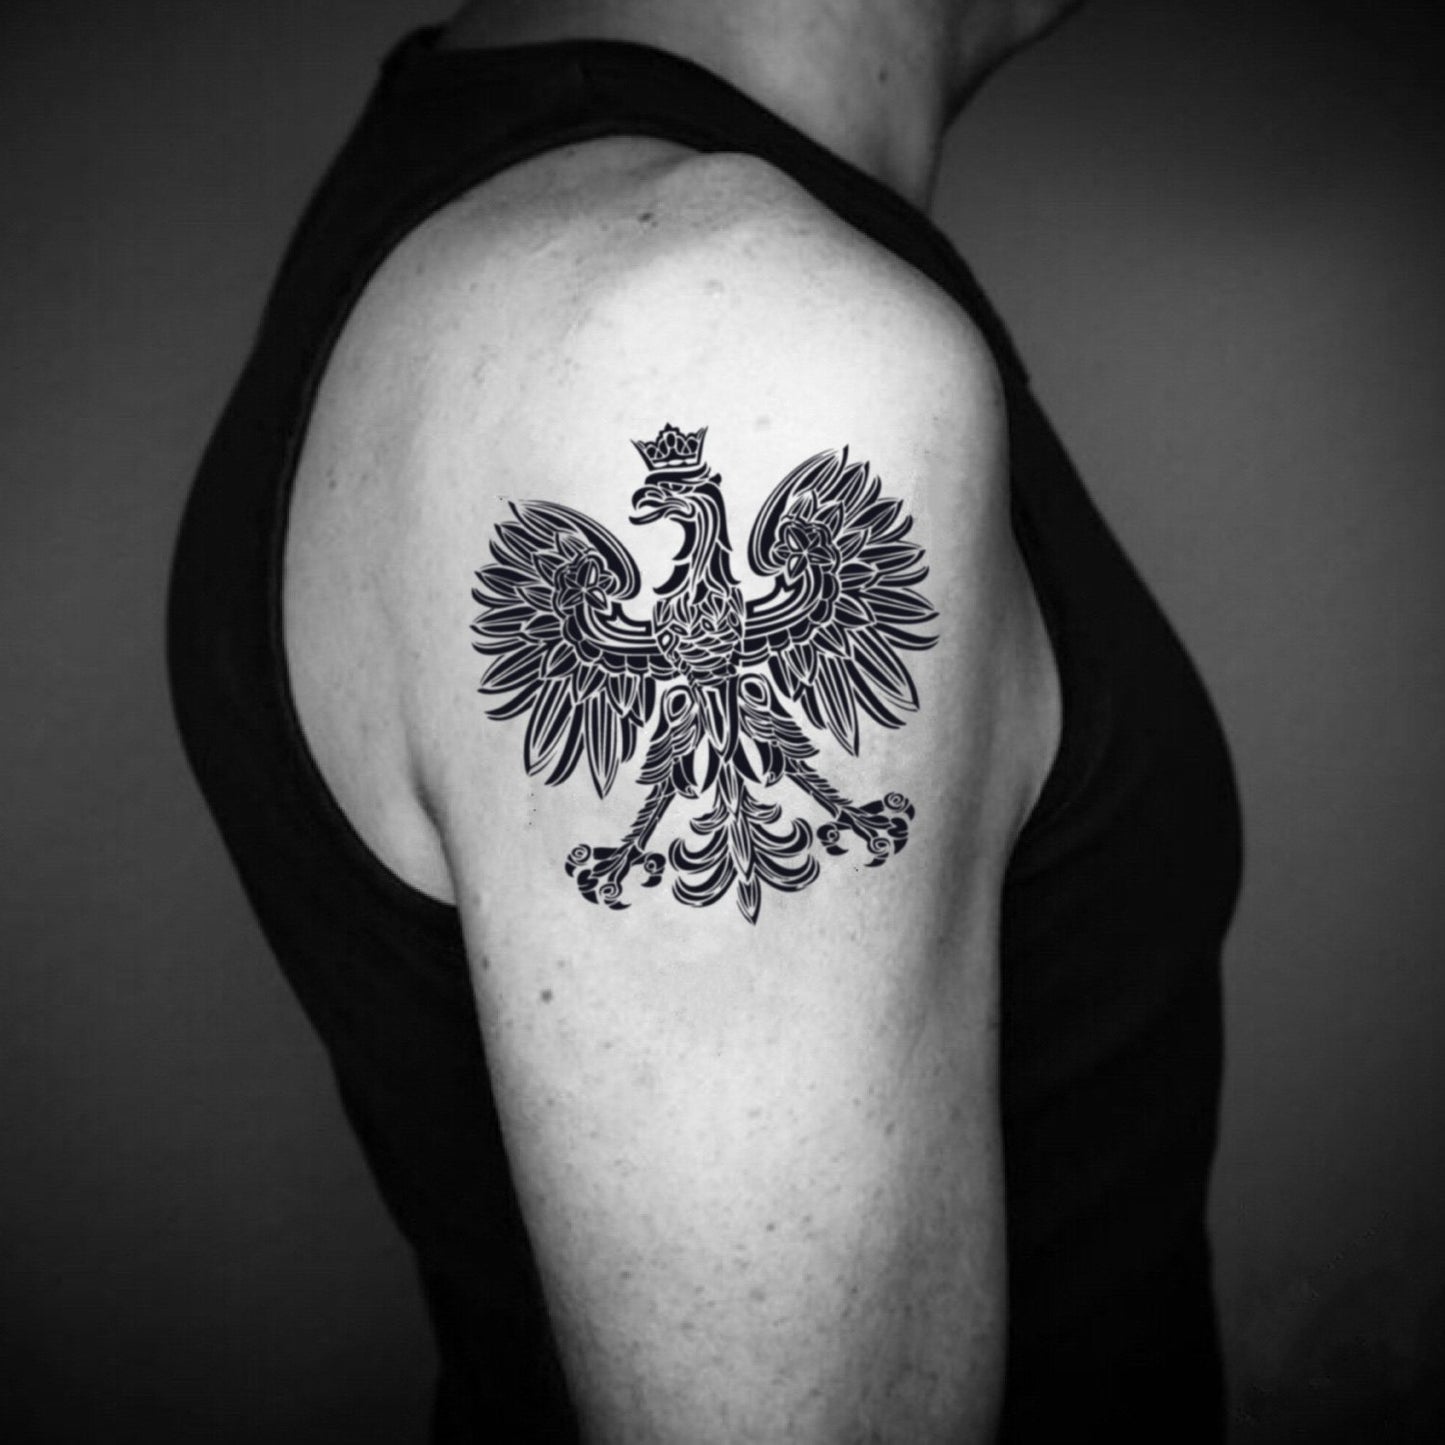 fake medium polish flag aztec eagle eagles coat of arms of Poland falcon animal temporary tattoo sticker design idea on upper arm